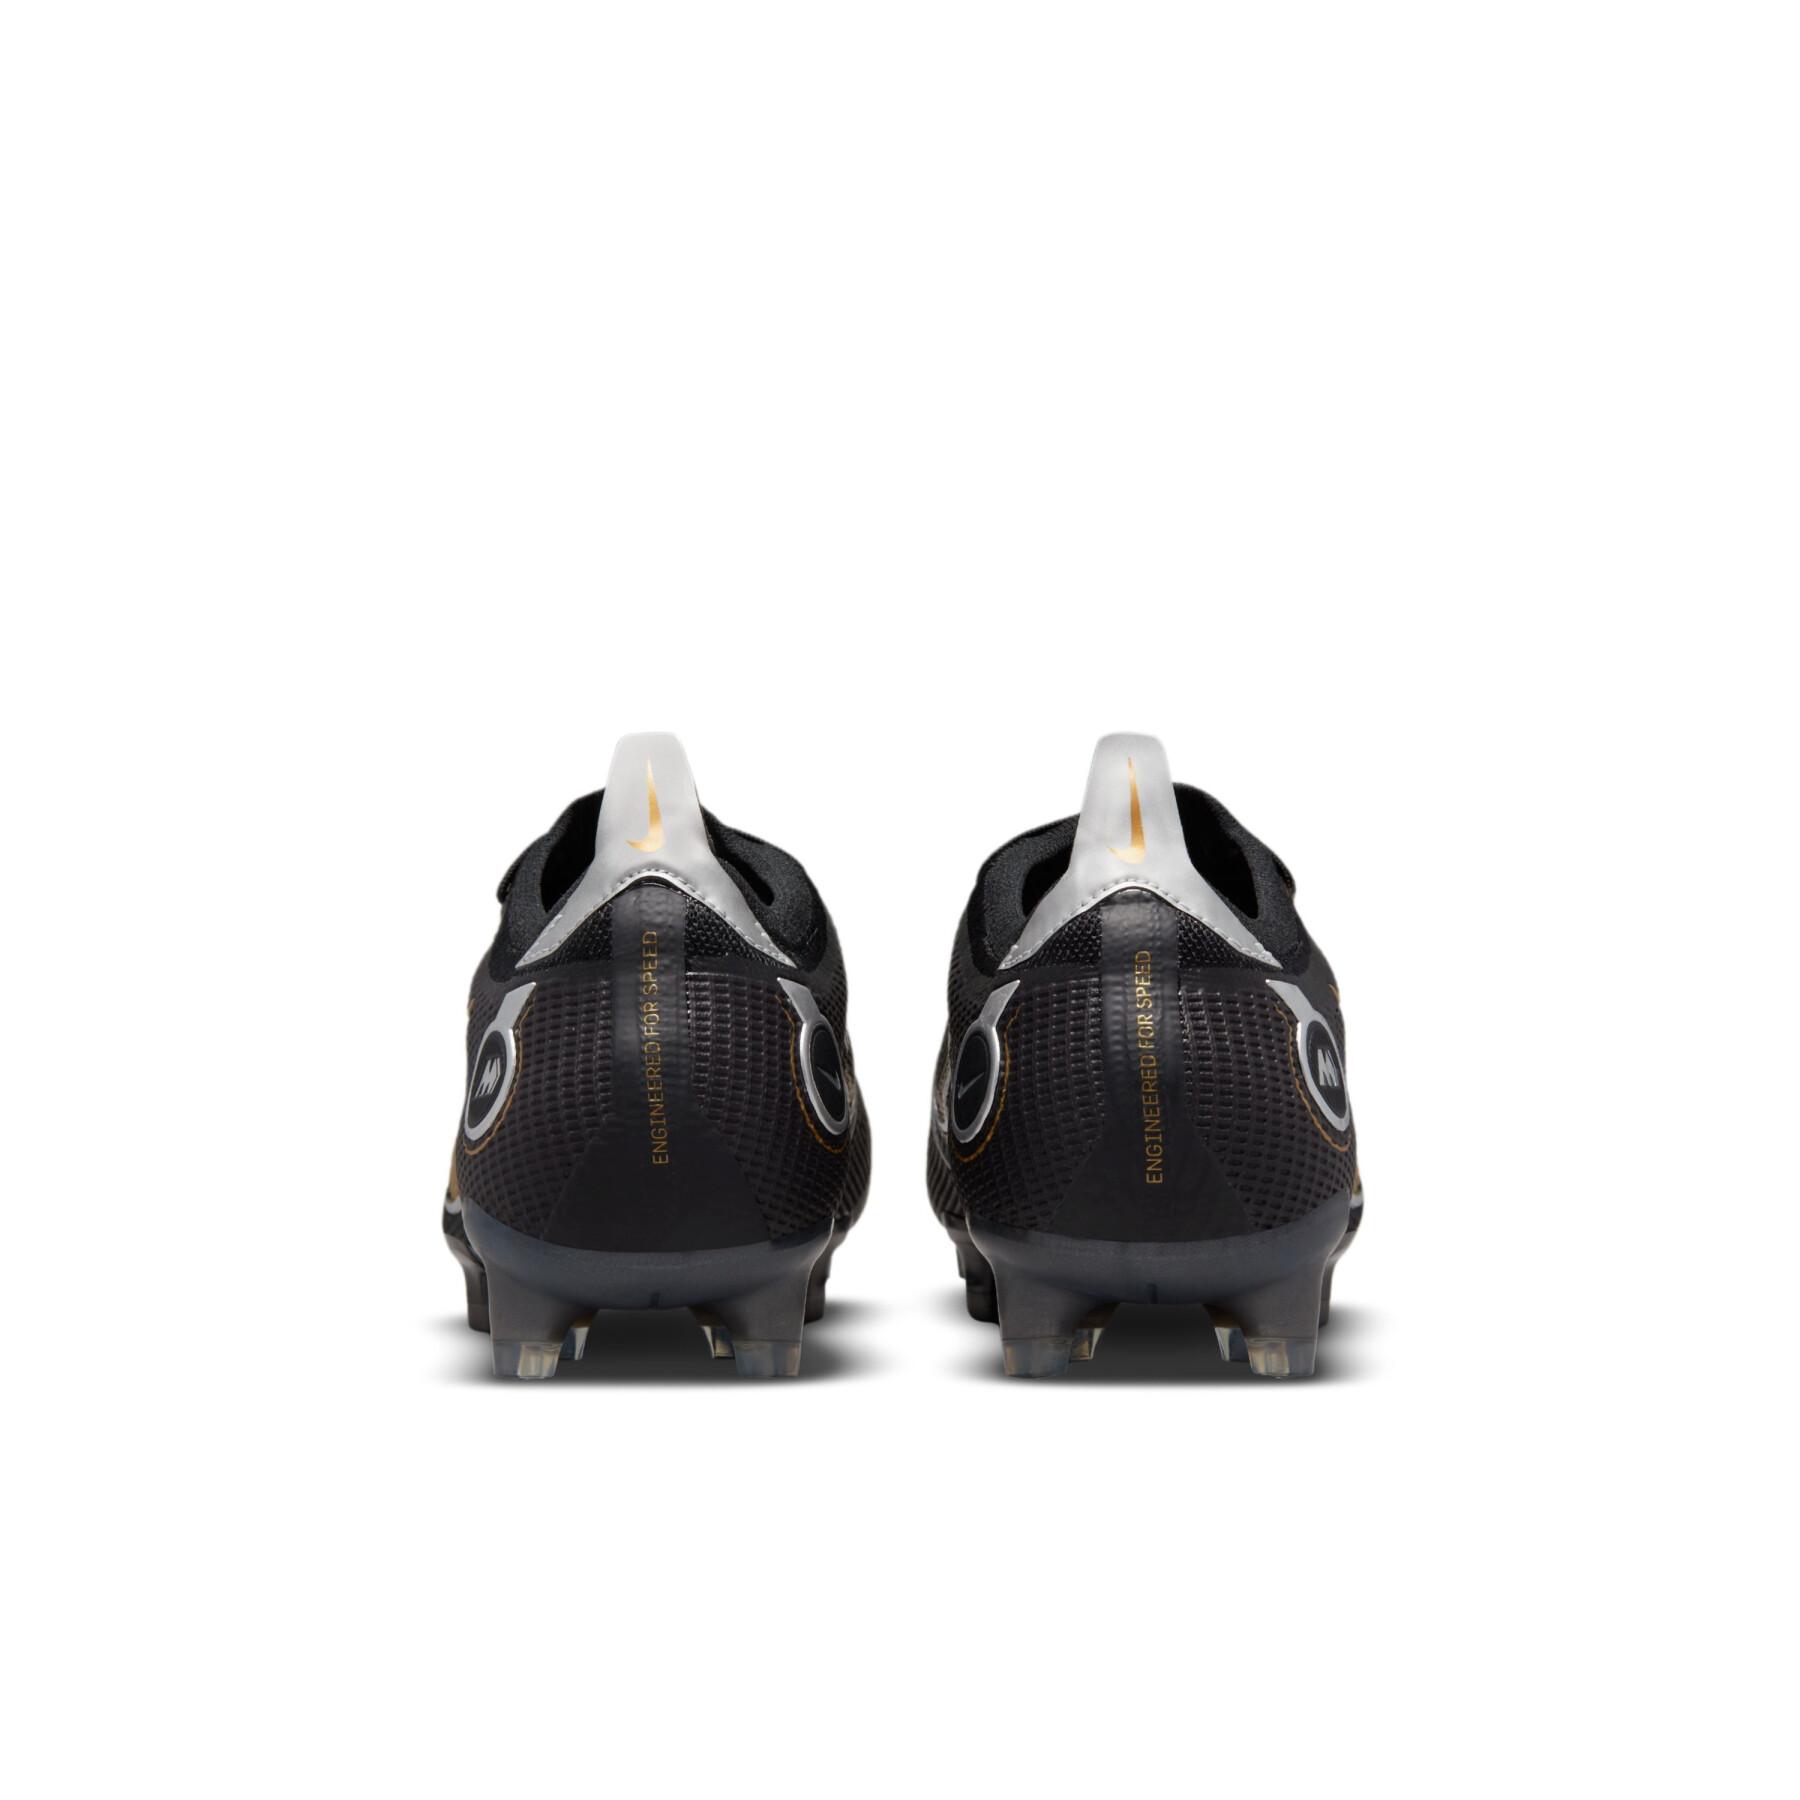 Botas de fútbol Nike Mercurial Vapor 14 Élite FG - Shadow pack